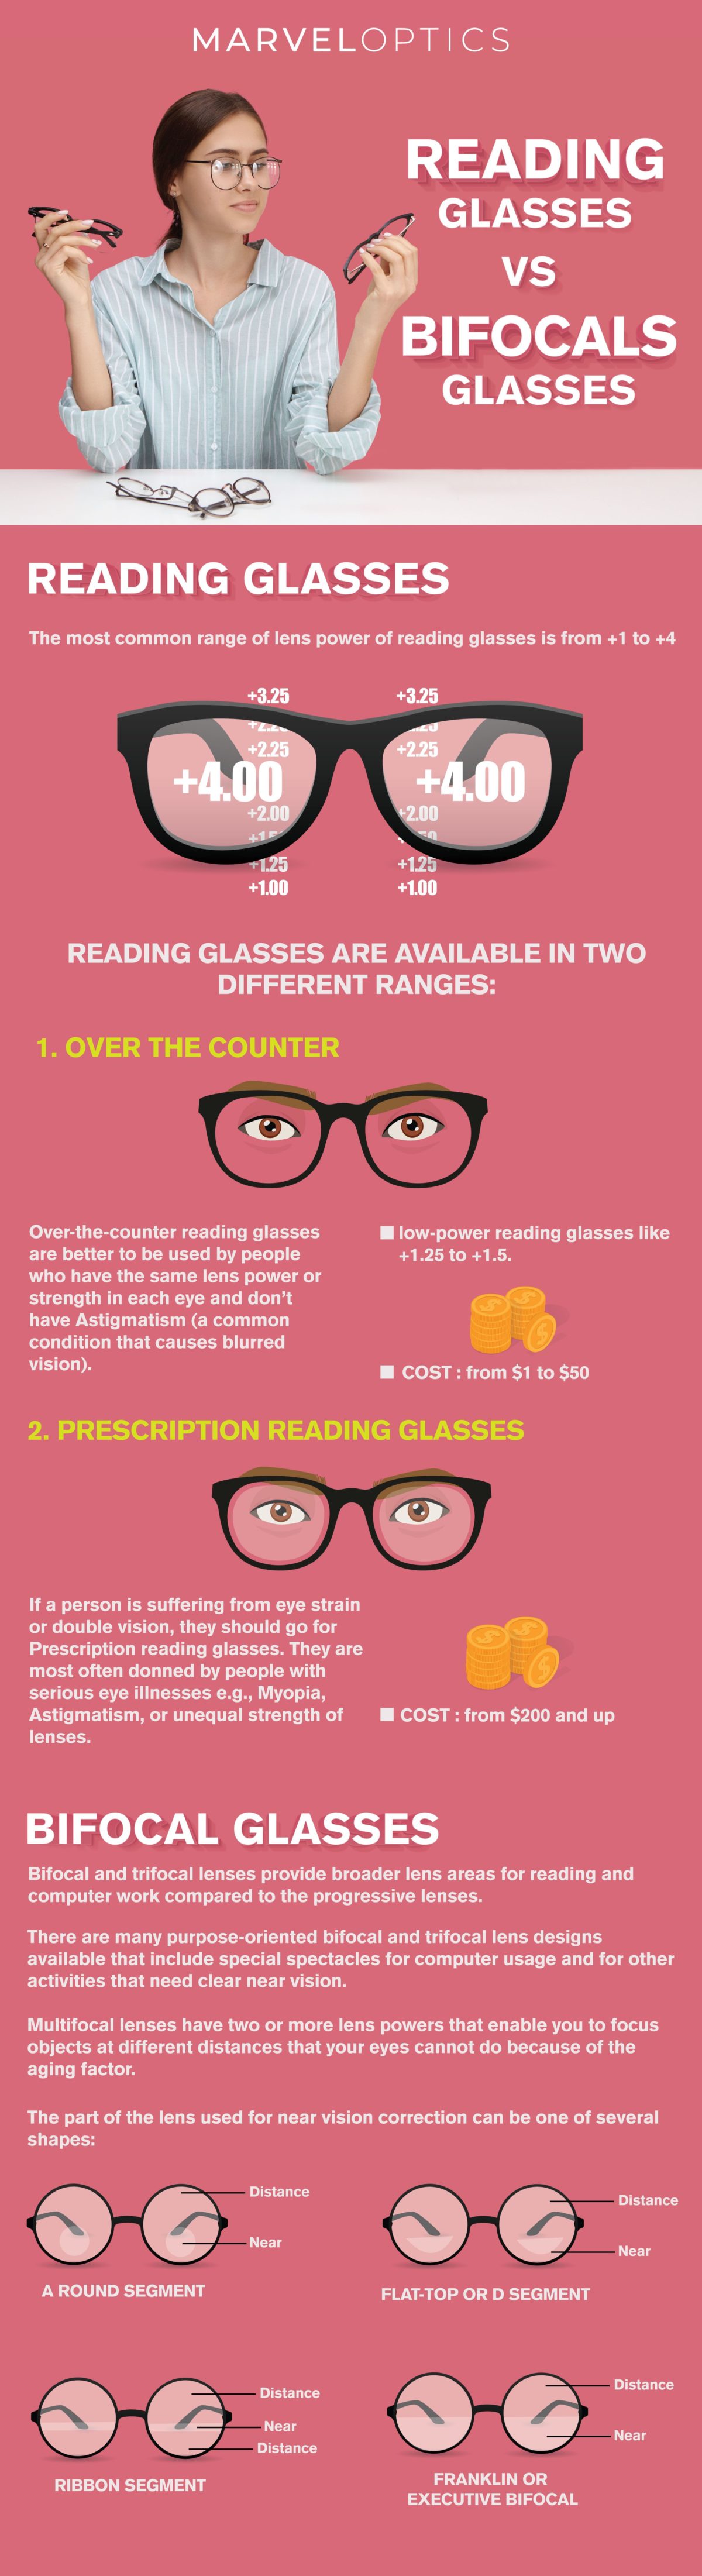 Reading Glasses vs Bifocals Glasses | Marvel Optics